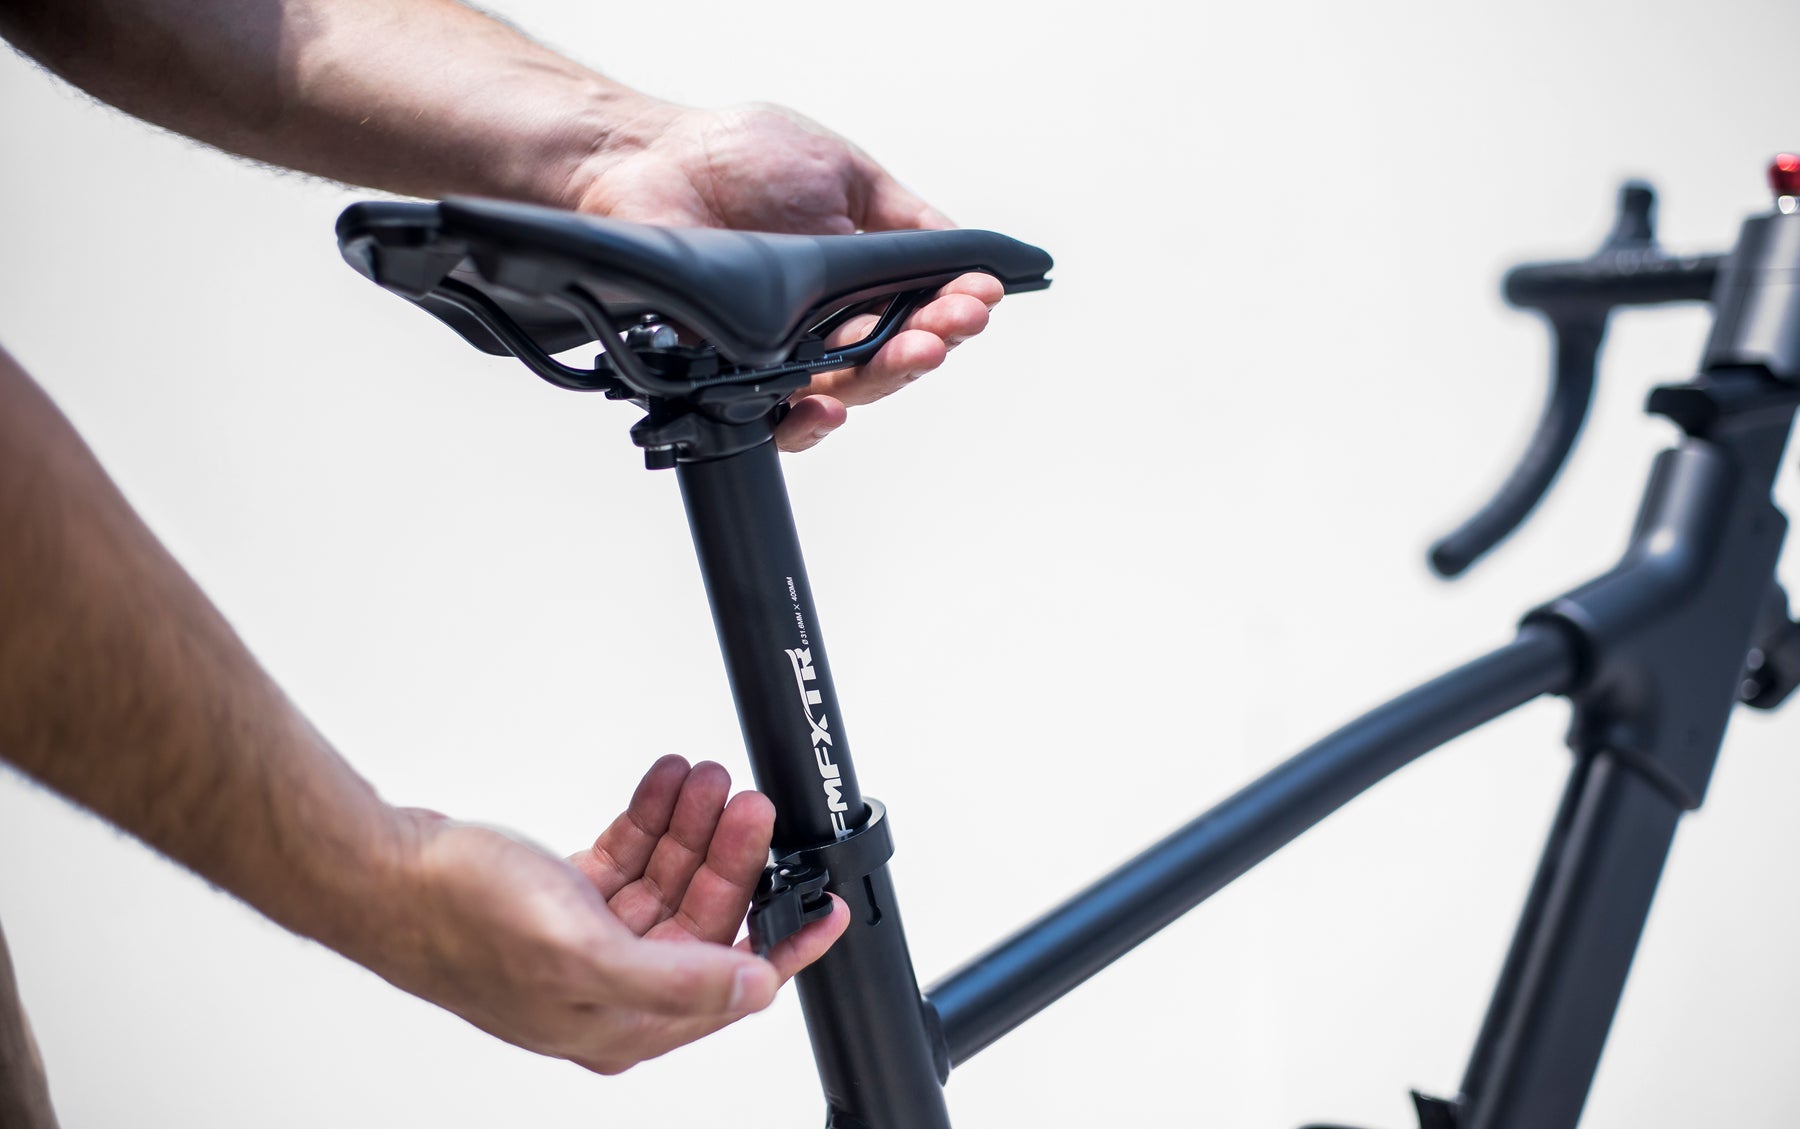 La biomecánica del sillín de la bicicleta: cómo elegir el más adecuado  entre una infinidad de modelos